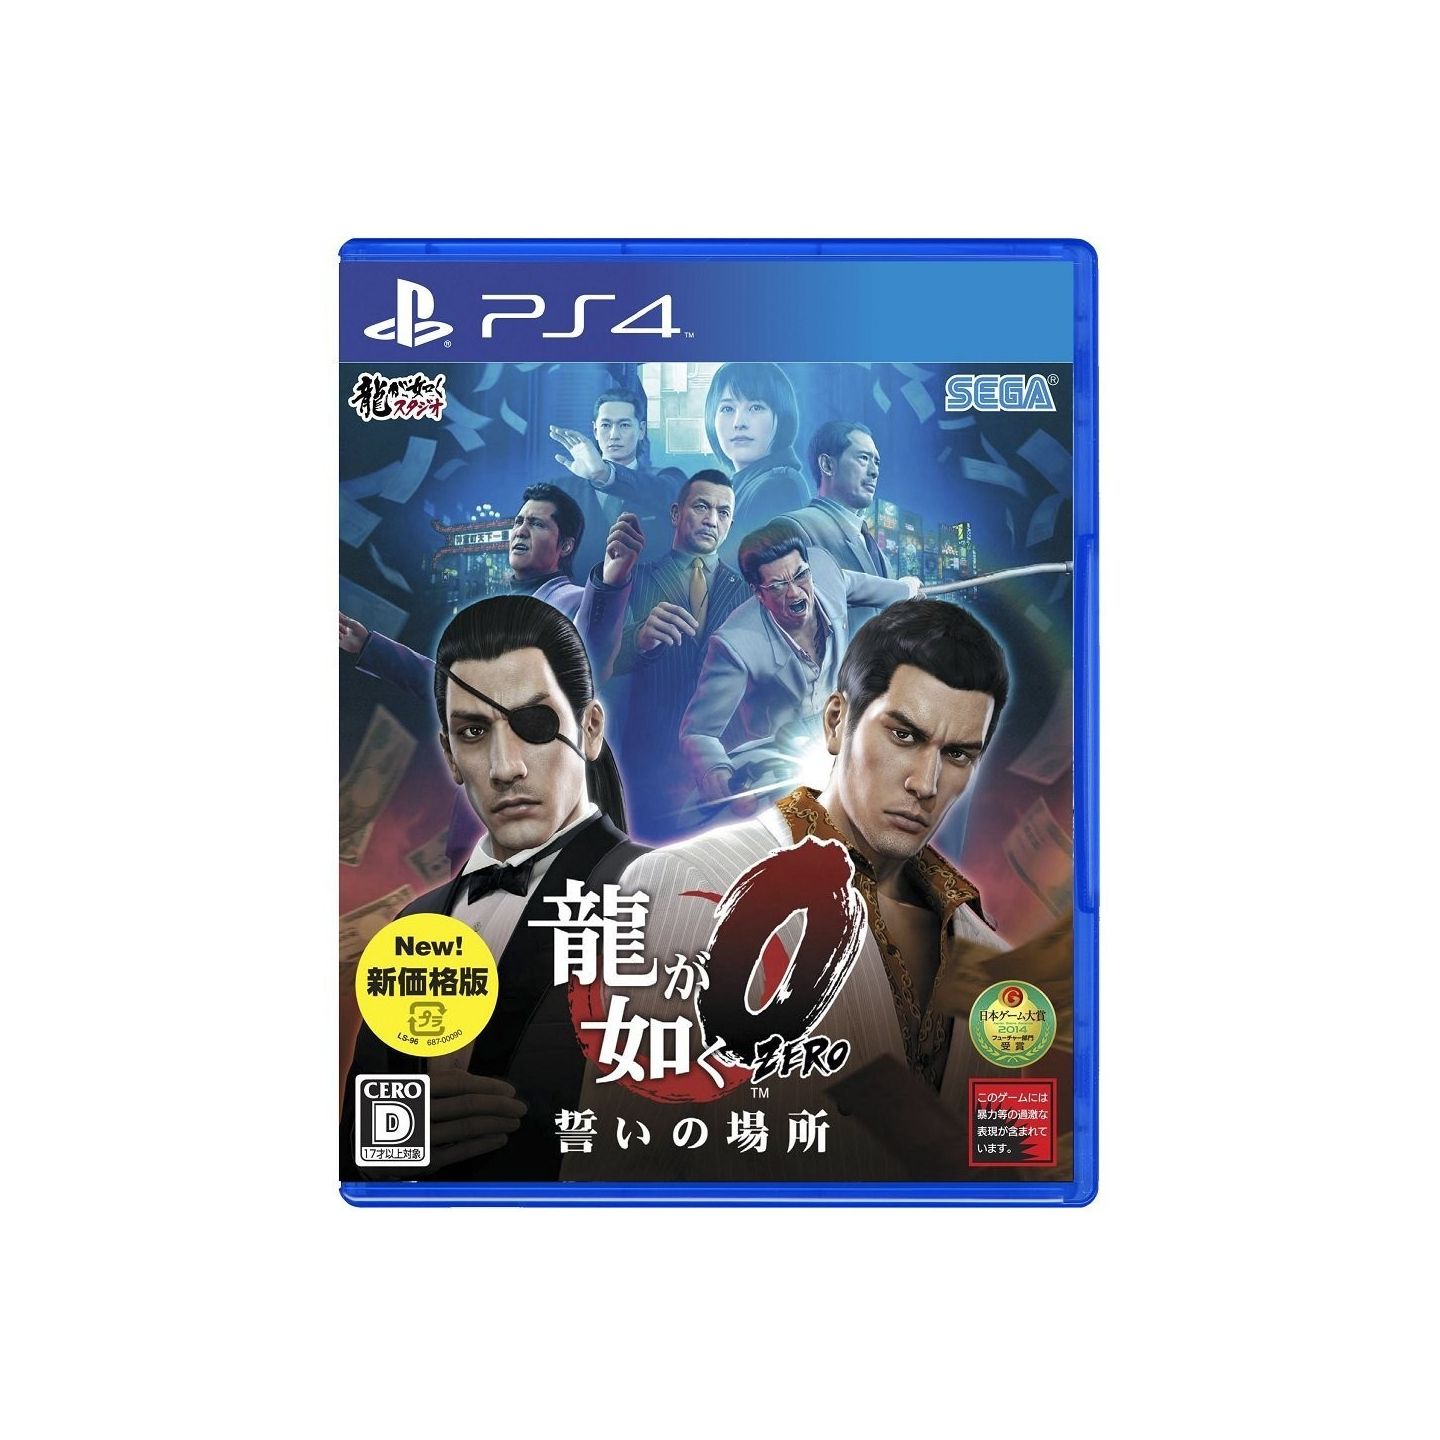 Yakuza Kiwami 2 New Price Edition Playstation 4 PS4 Video Games